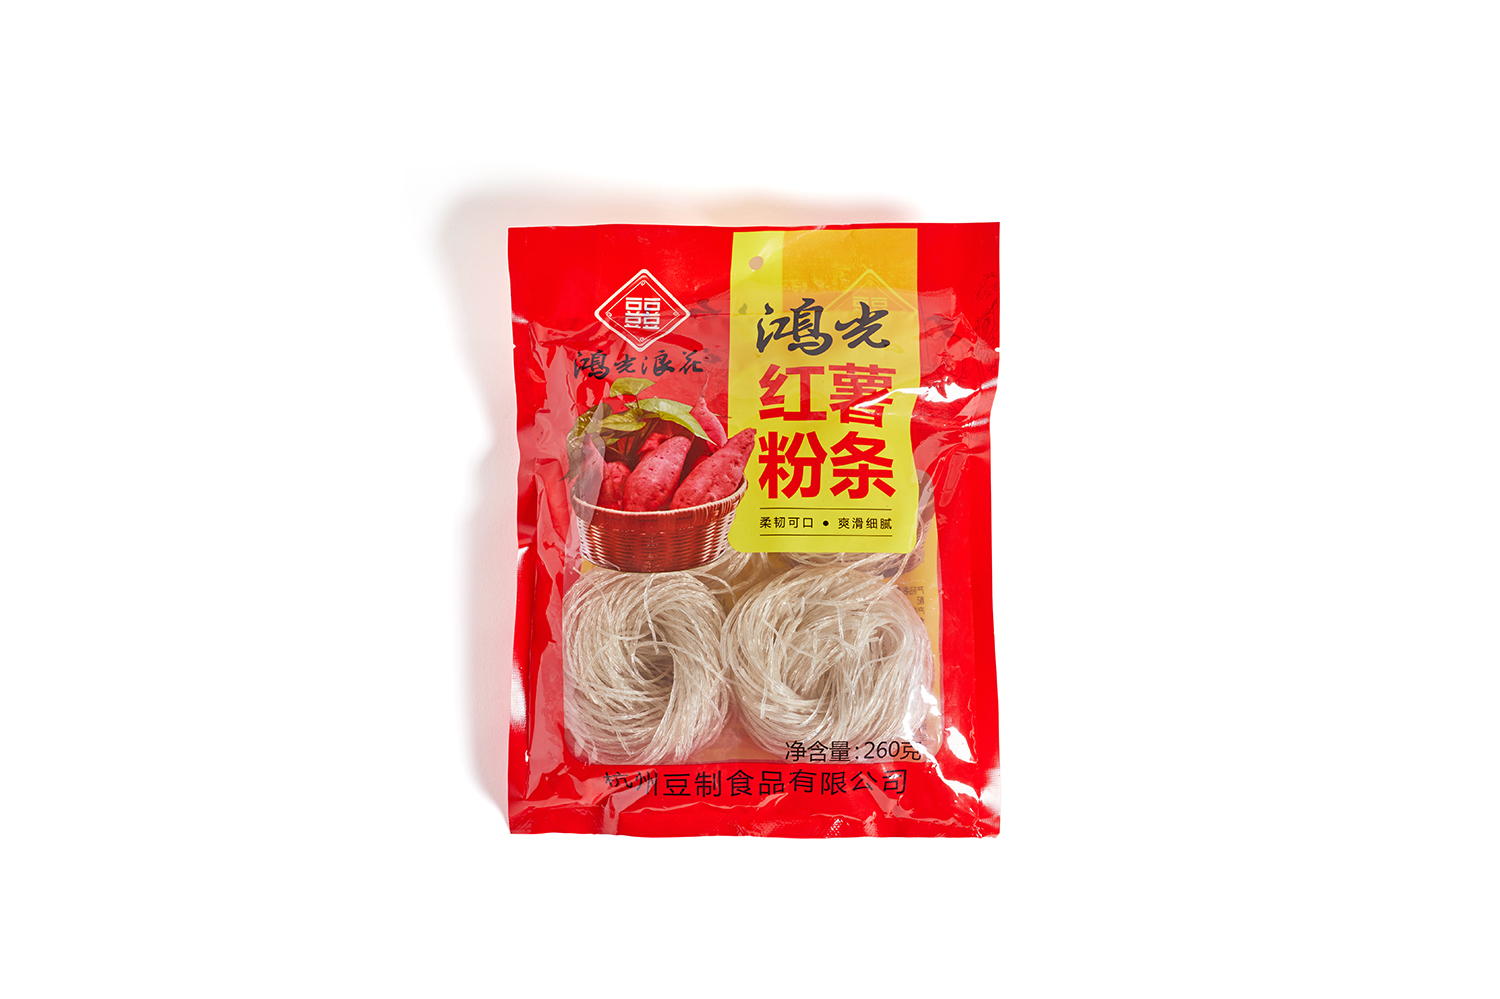 Hongguang sweet potato noodles 260g